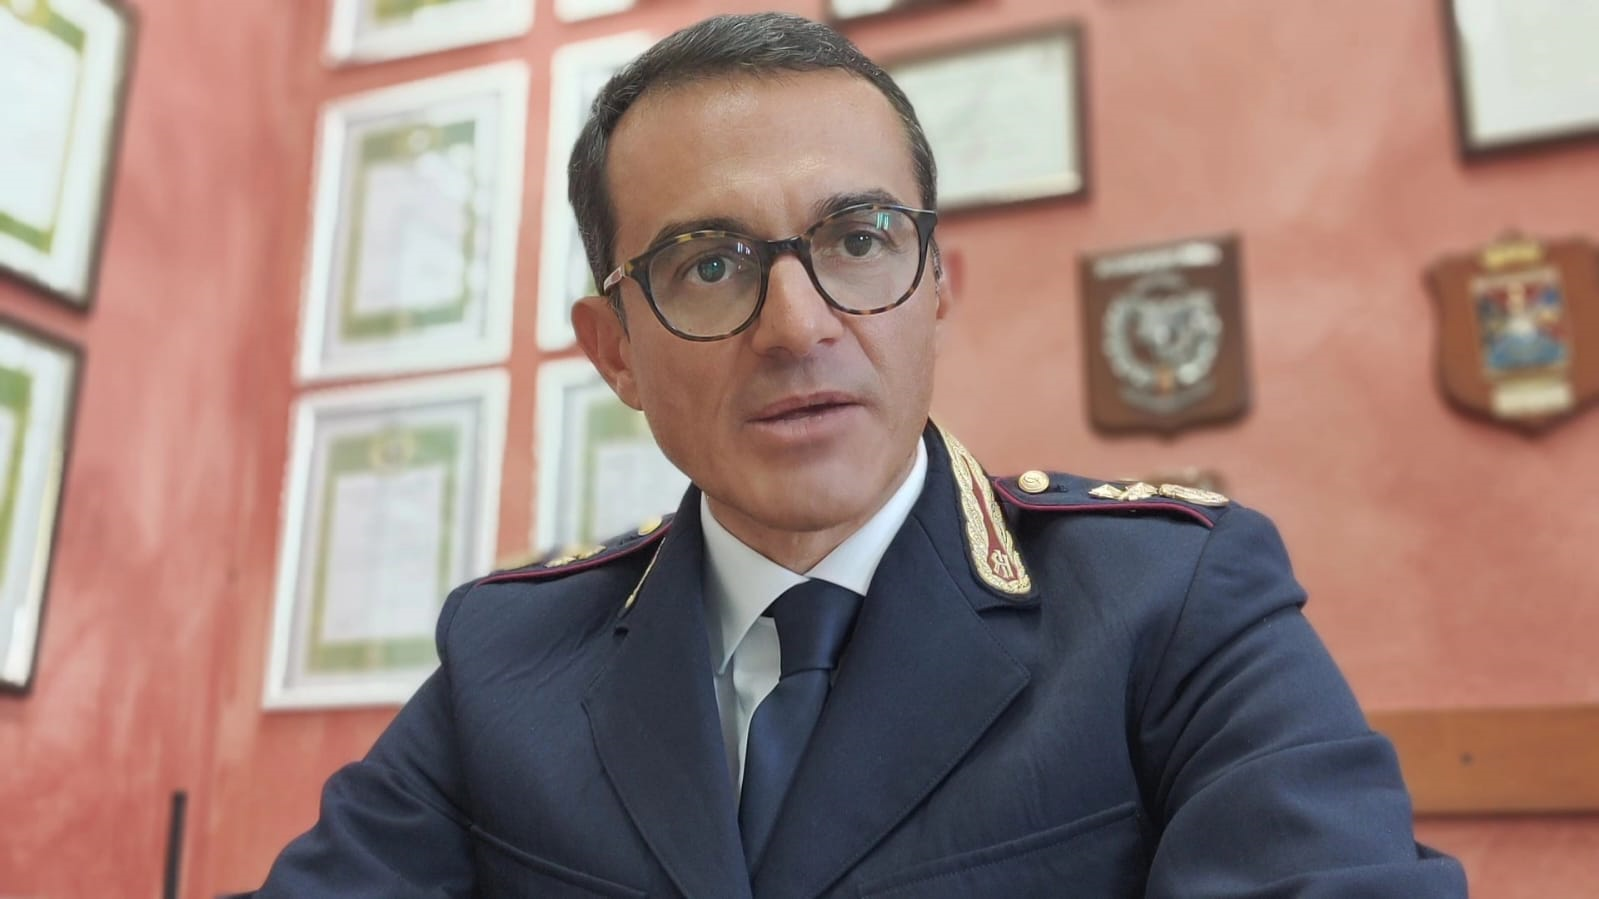 Il Vice Questore Carlo Bartelli è il nuovo Dirigente della Squadra Mobile veronese della Polizia. Sostituisce Massimo Sacco, promosso Primo Dirigente e trasferito alla Questura di Rimini.